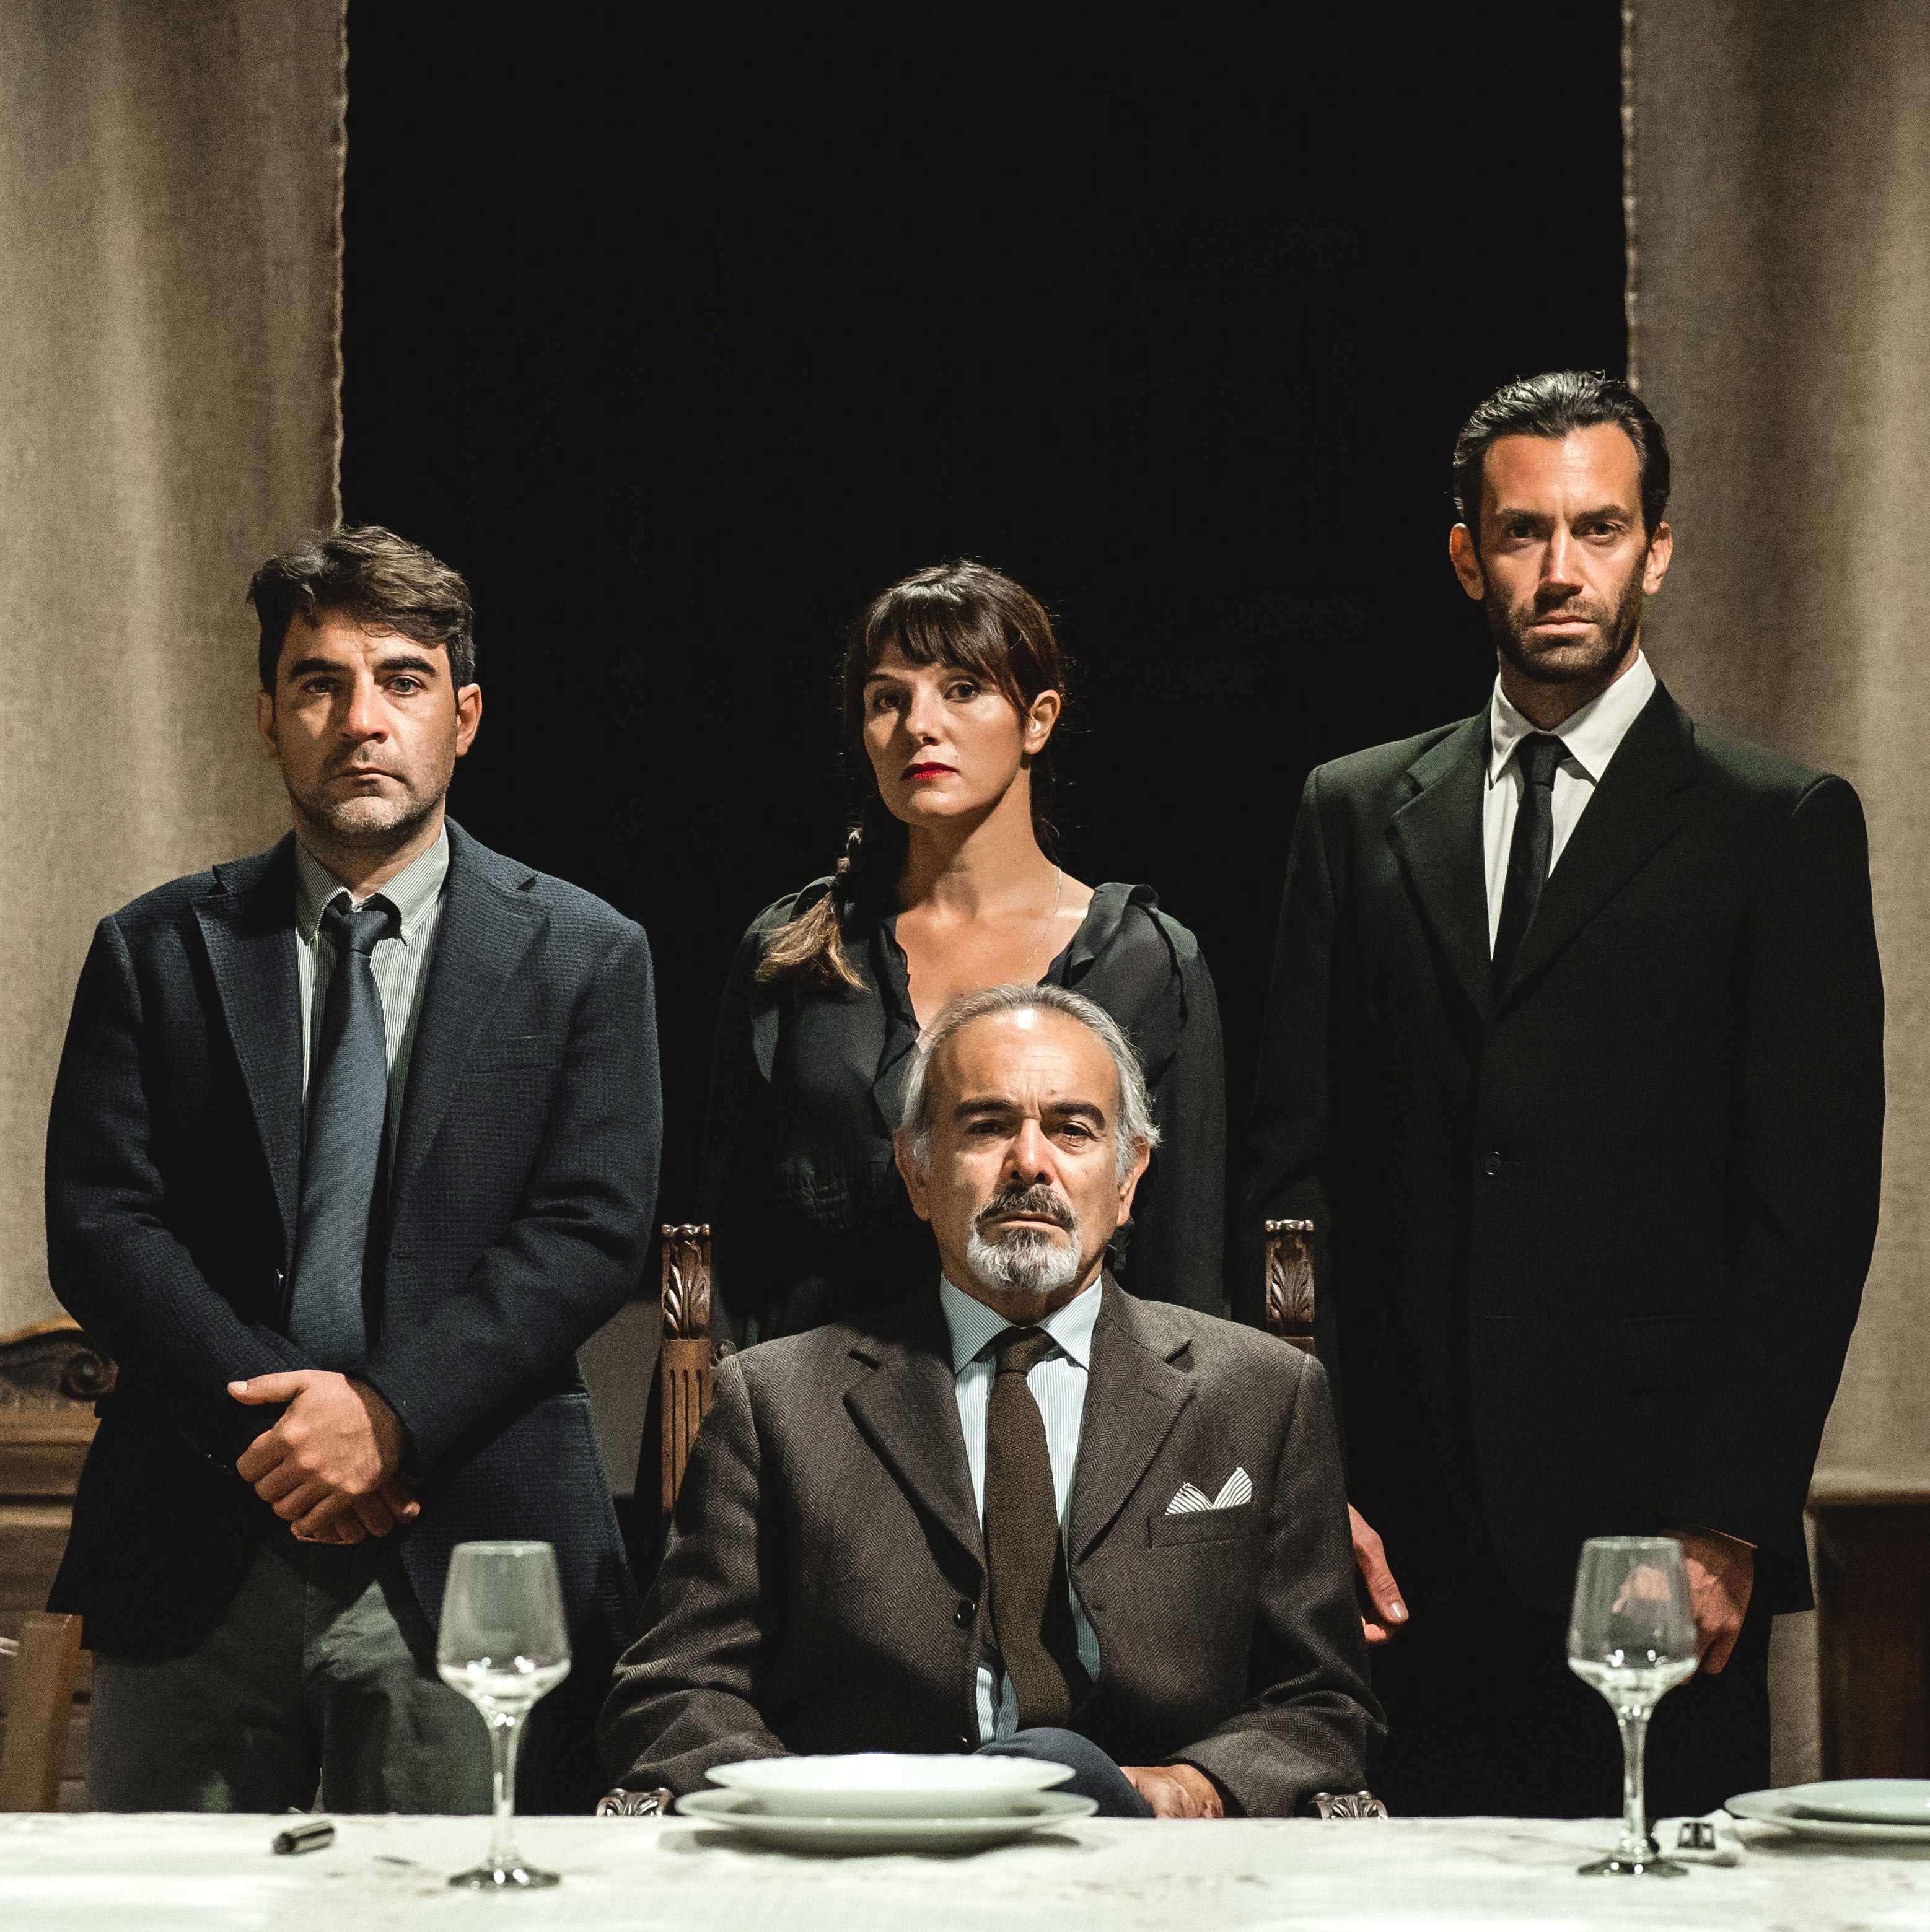 Modica, al Teatro Garibaldi ritorna Andrea Tidona con "La Cena" per la regia di Walter Manfrè